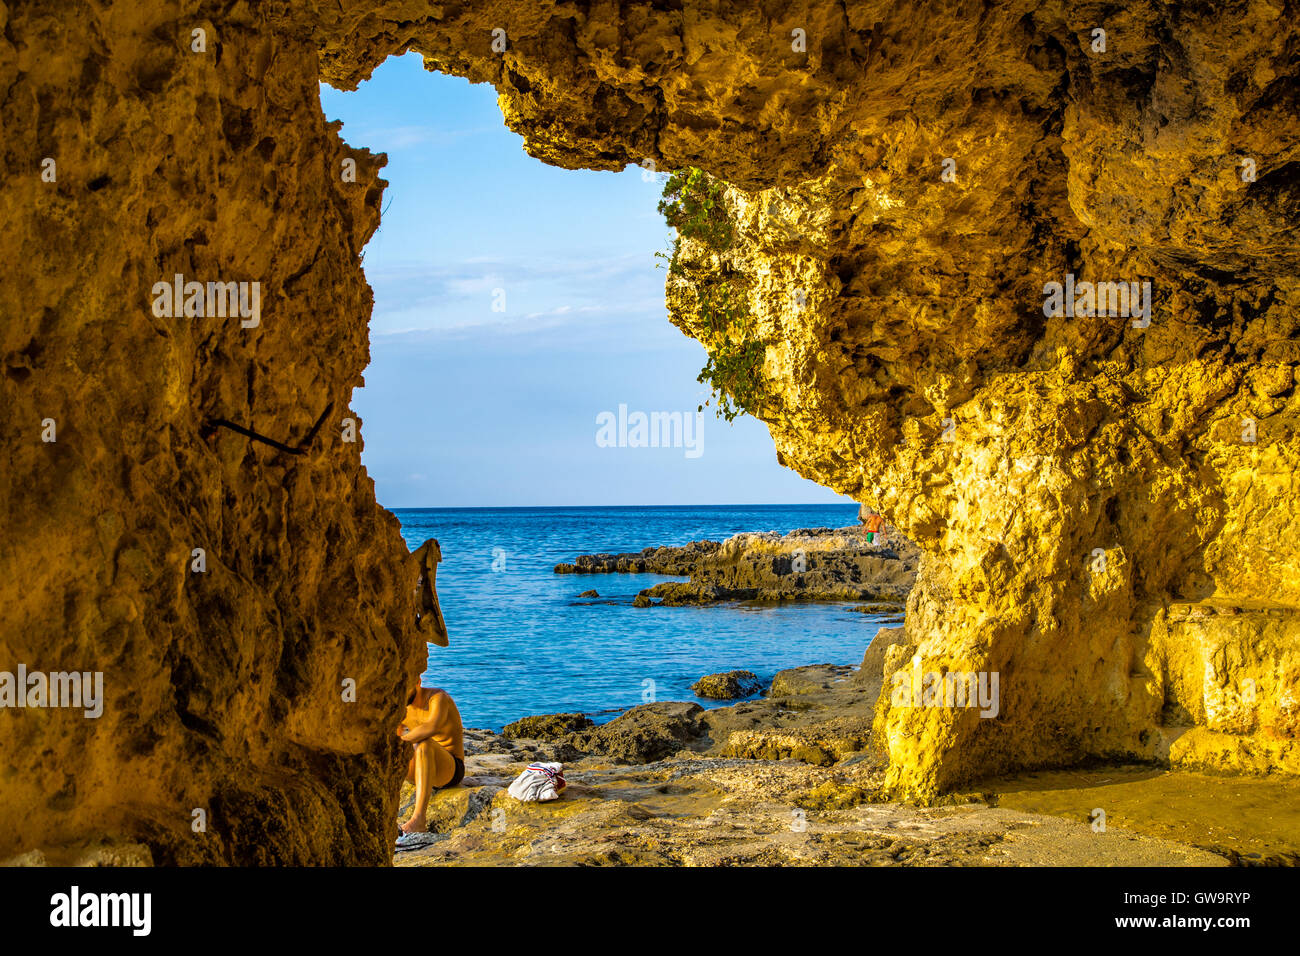 Caletta rocciosa sulle spiagge della costa adriatica in Puglia, Italia Foto Stock